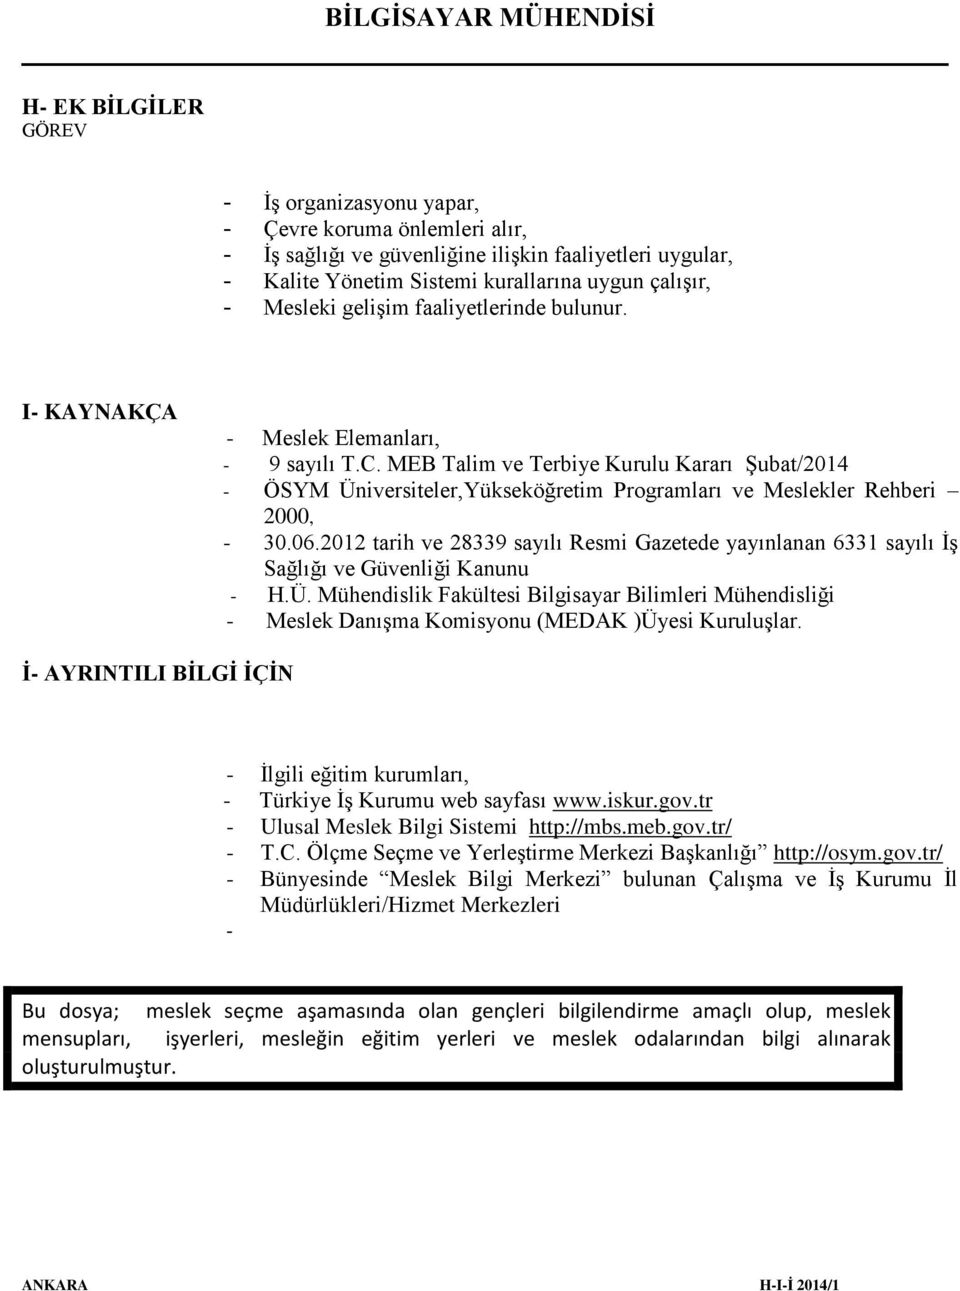 MEB Talim ve Terbiye Kurulu Kararı Şubat/2014 - ÖSYM Üniversiteler,Yükseköğretim Programları ve Meslekler Rehberi 2000, - 30.06.